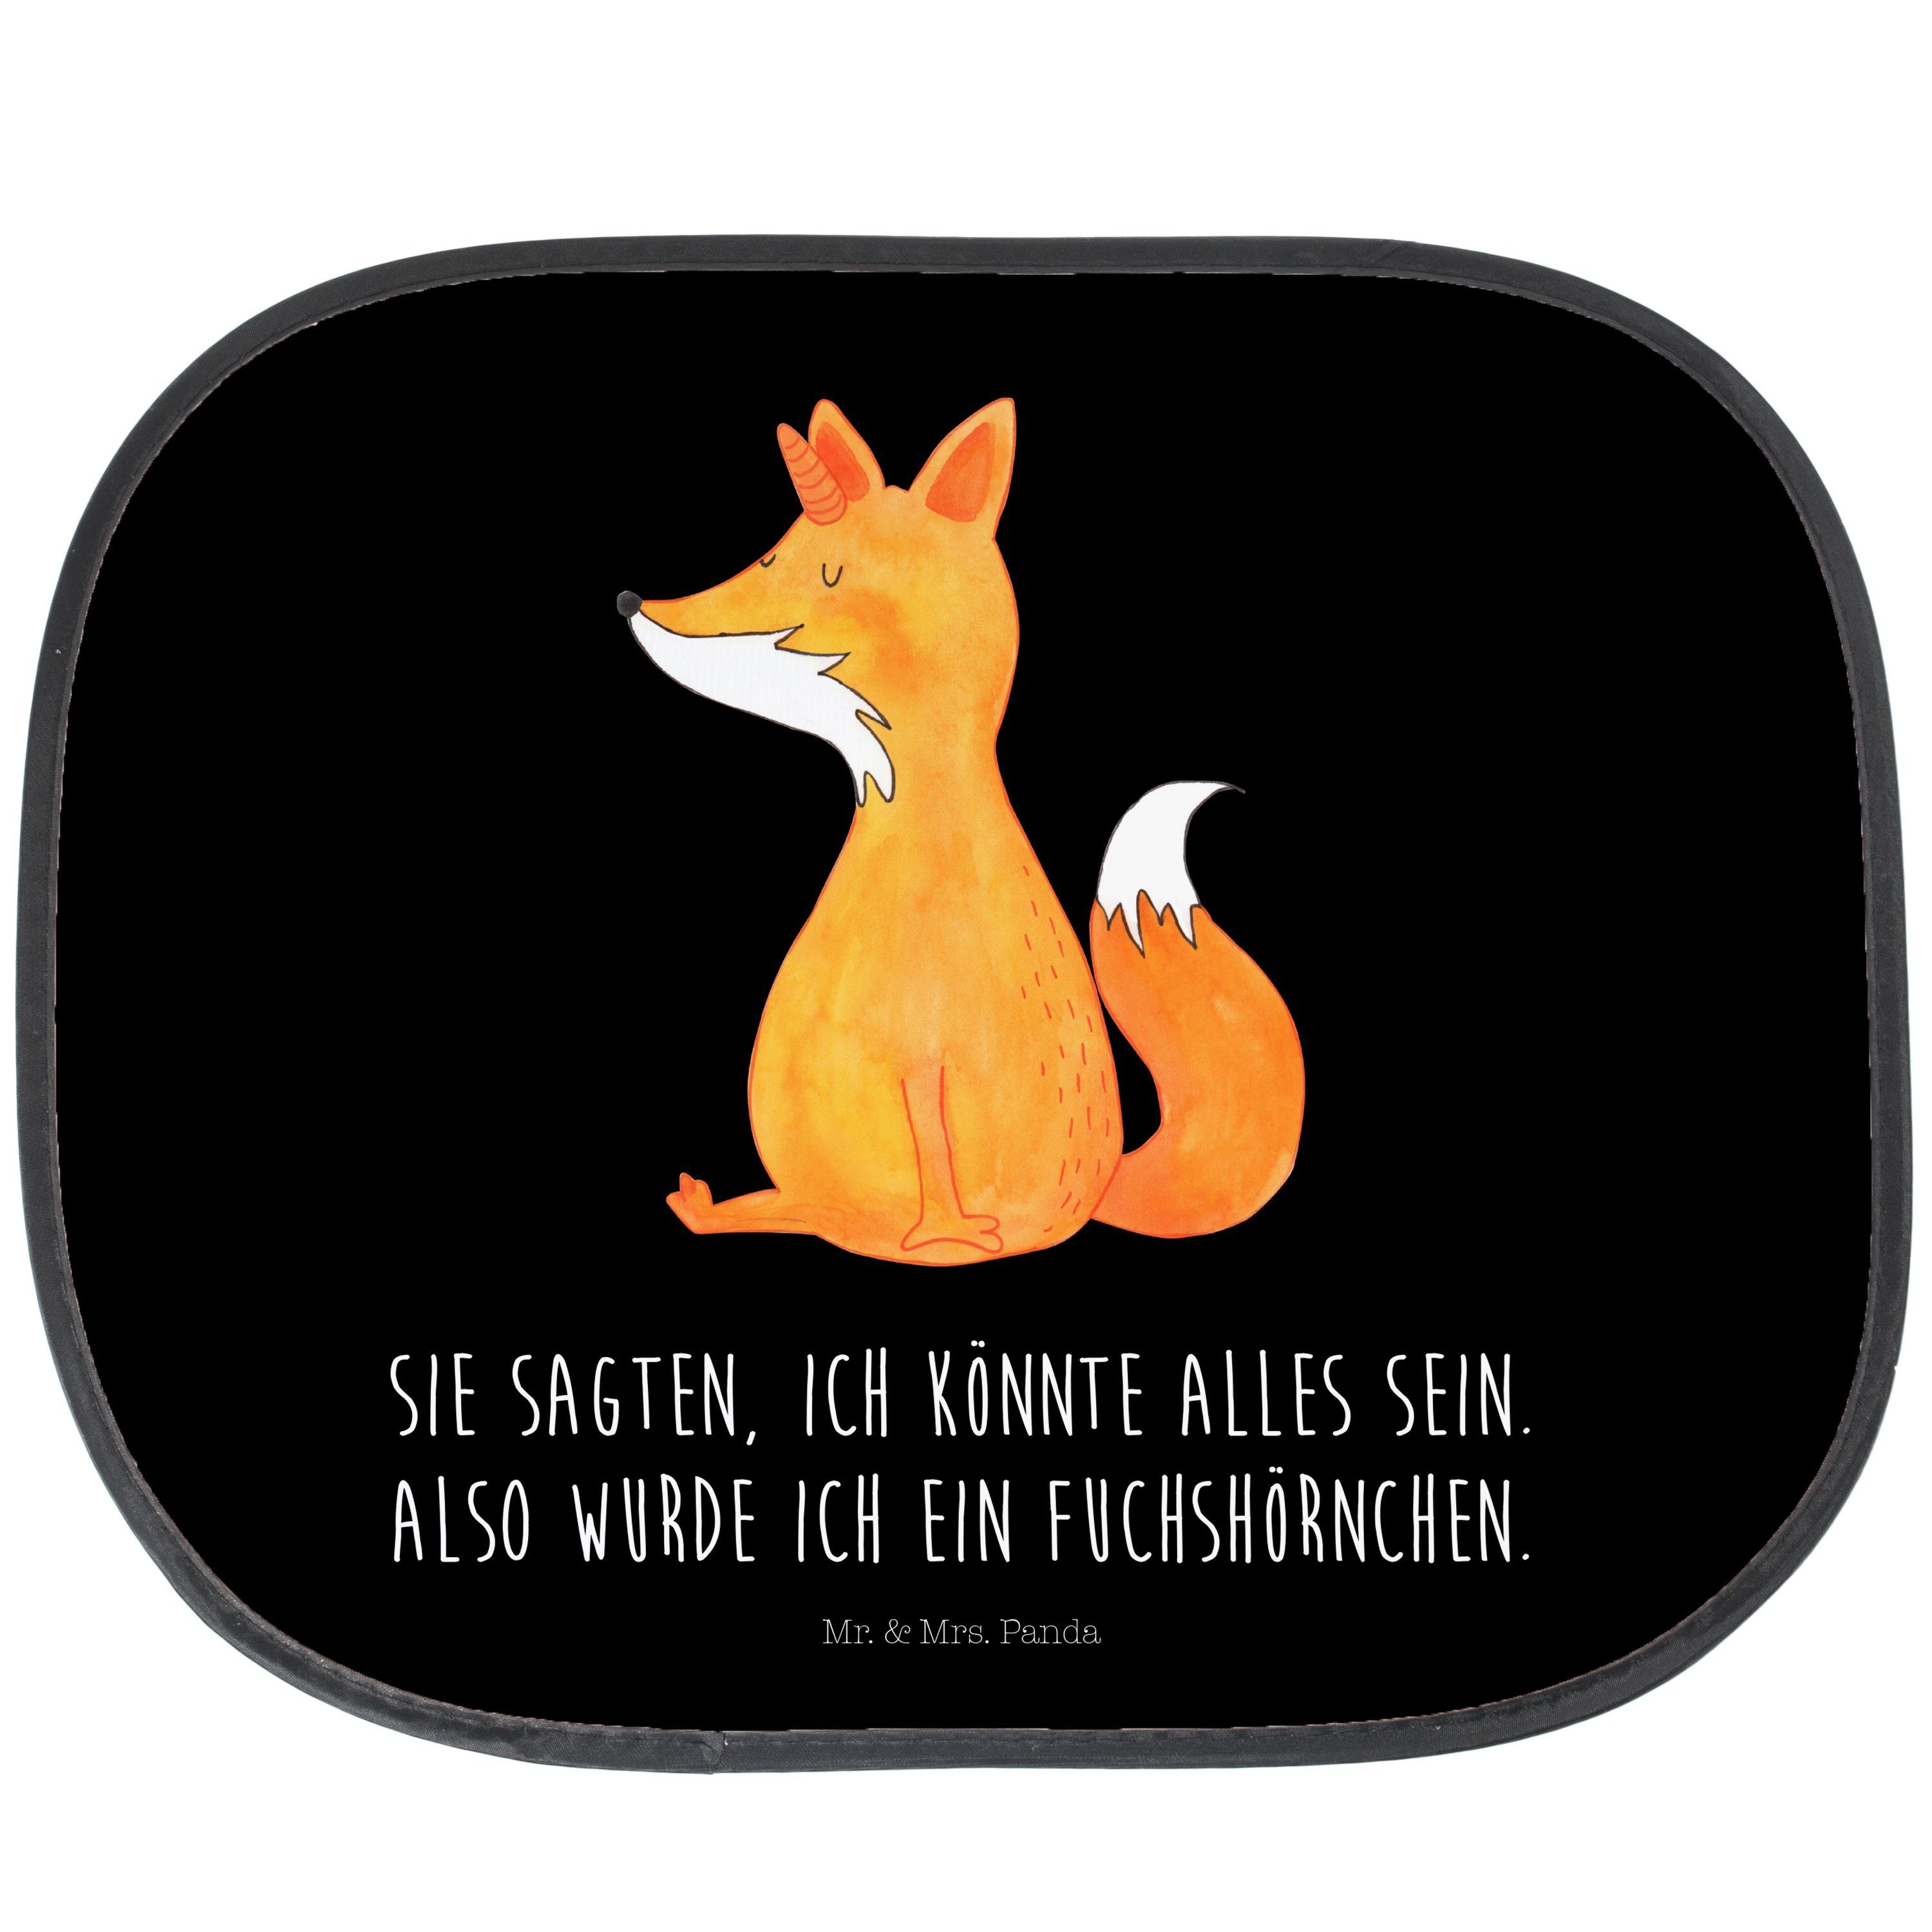 Sonnenschutz Fuchshörnchen Wunsch - Schwarz - Geschenk, Pegasus, Einhörner, Sonnen, Mr. & Mrs. Panda, Seidenmatt